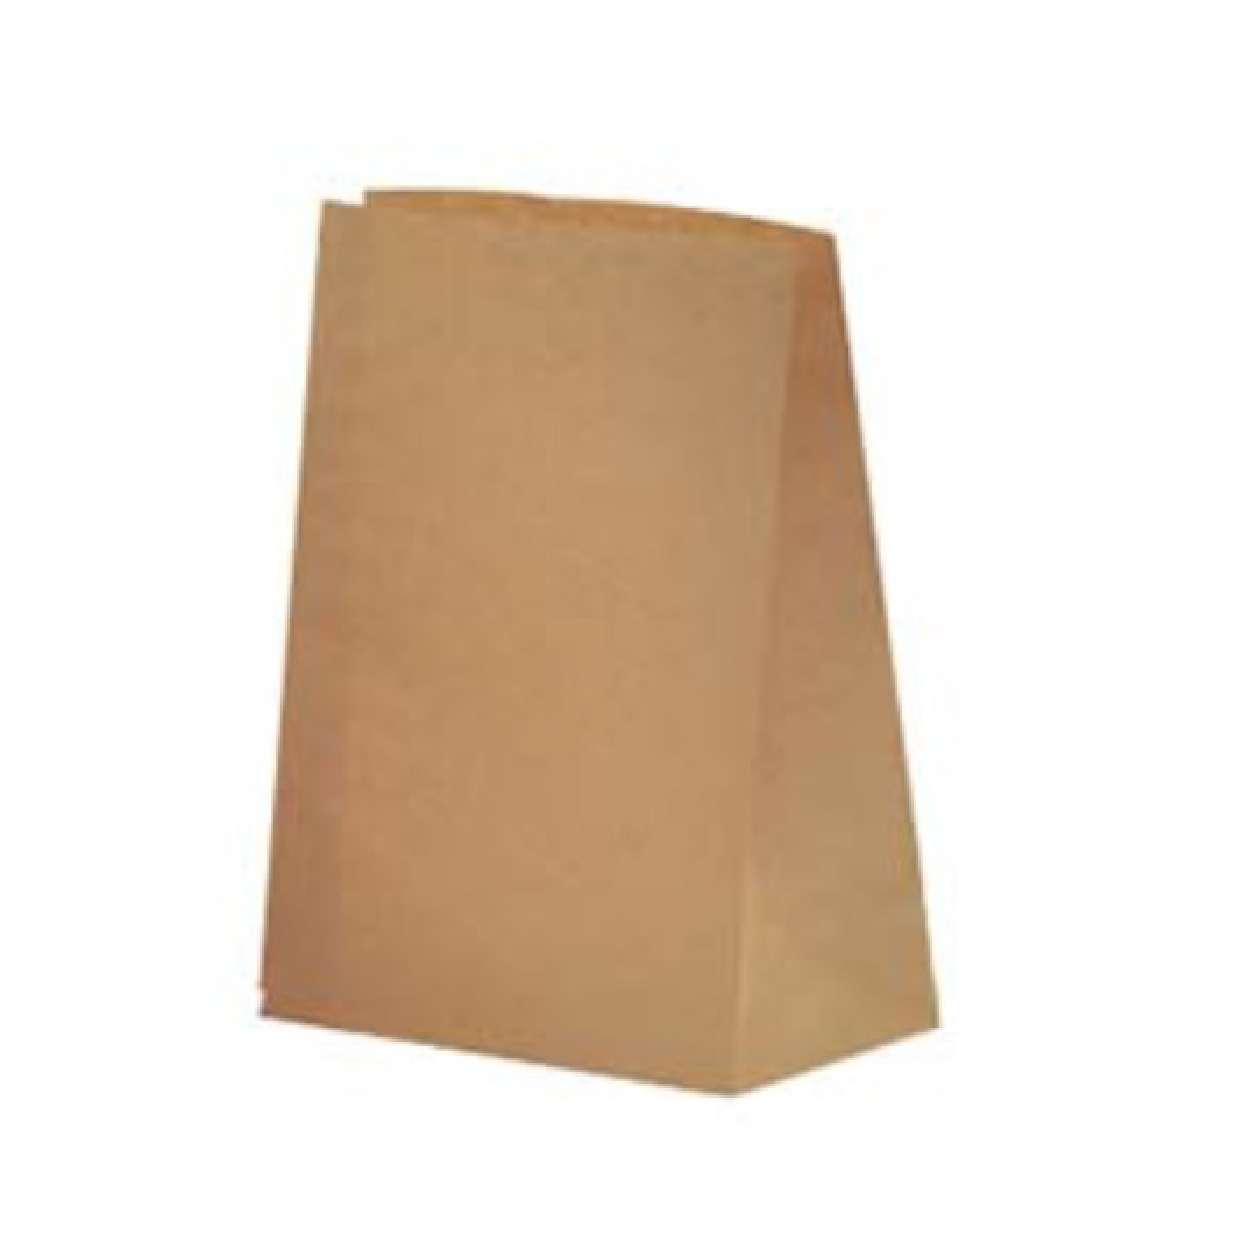 ถุงกระดาษมีก้น 80 แกรม สีน้ำตาล ขนาด 26x13x37 cm. (50 ใบ/แพ็ค)